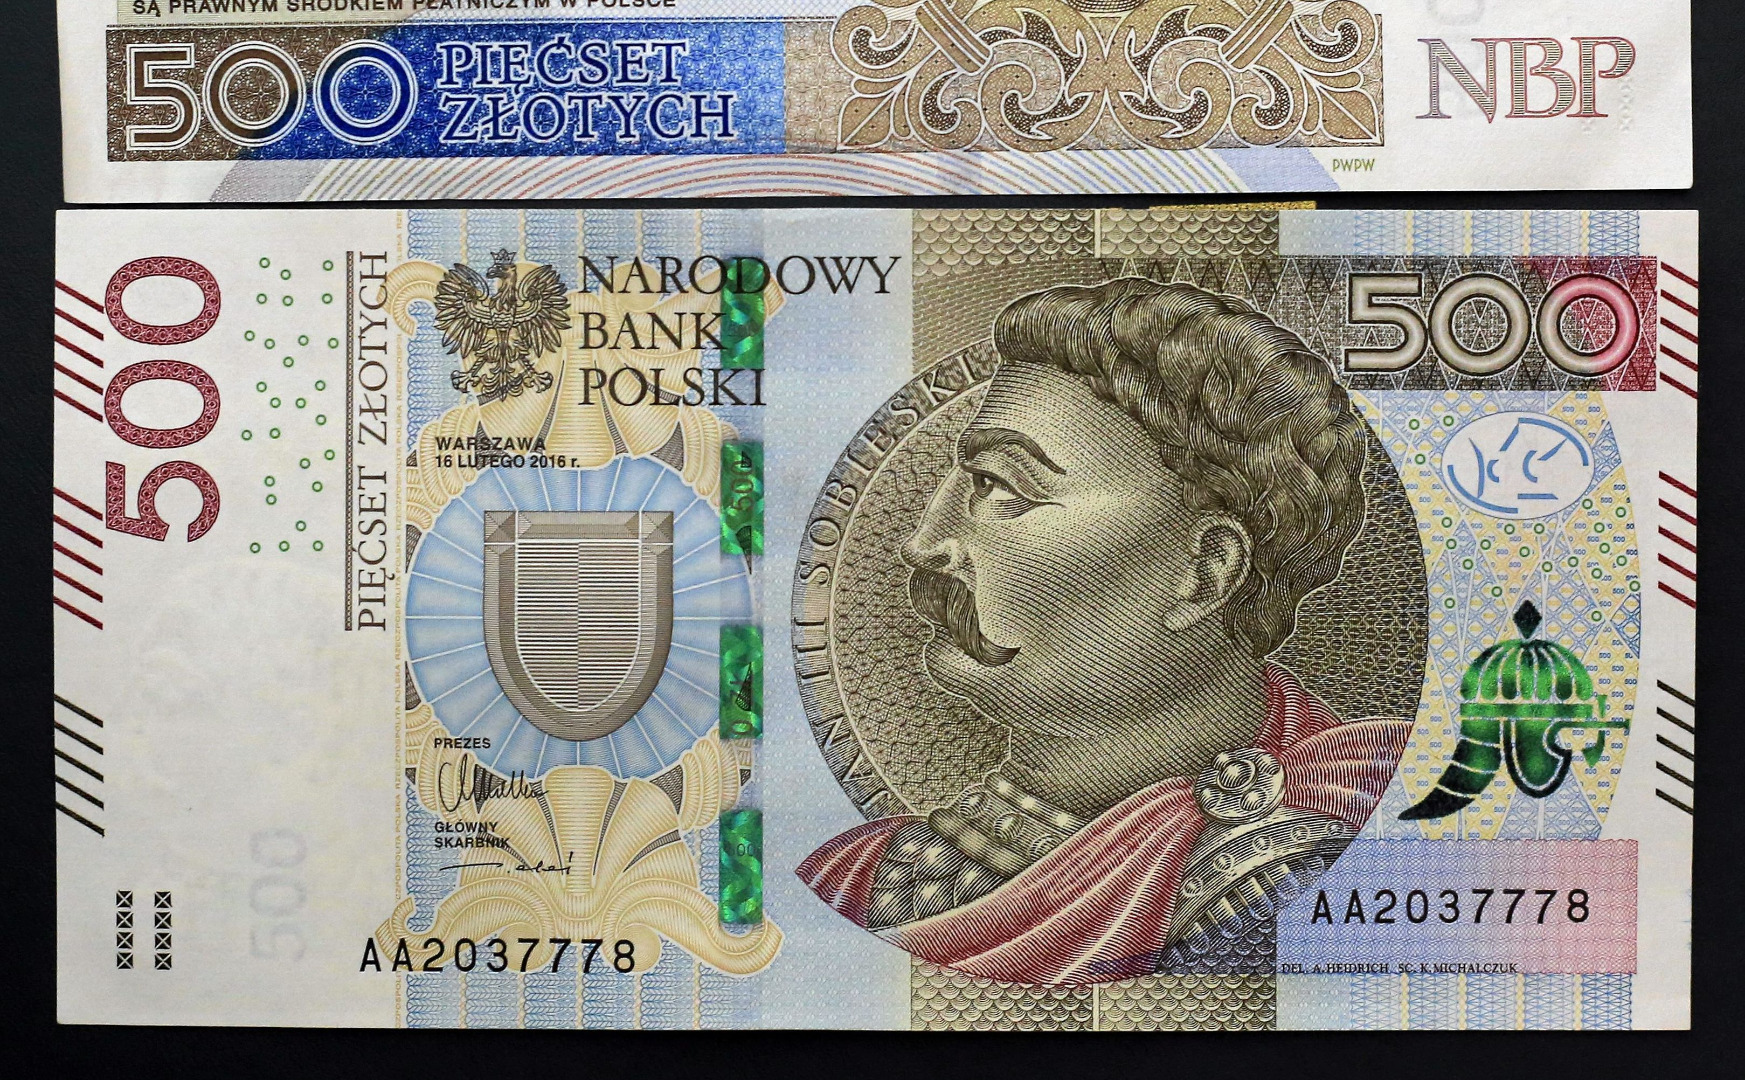 Banknot 500 zł trafił do obiegu. Prace rozpoczęto w listopadzie 2014 roku -  Dziennik.pl